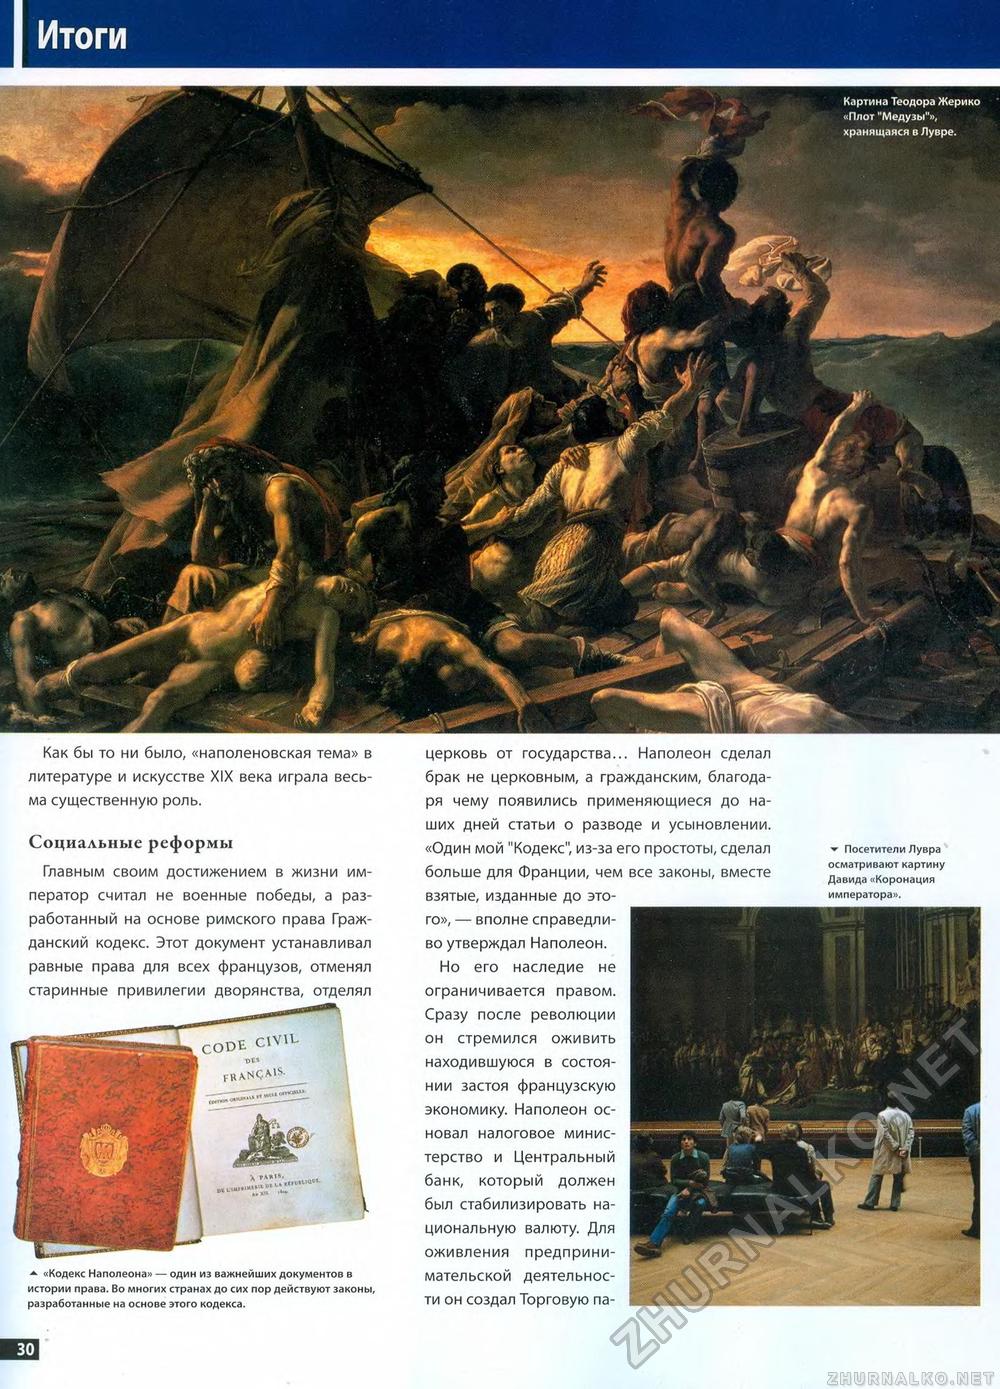 20. Наполеон, страница 30